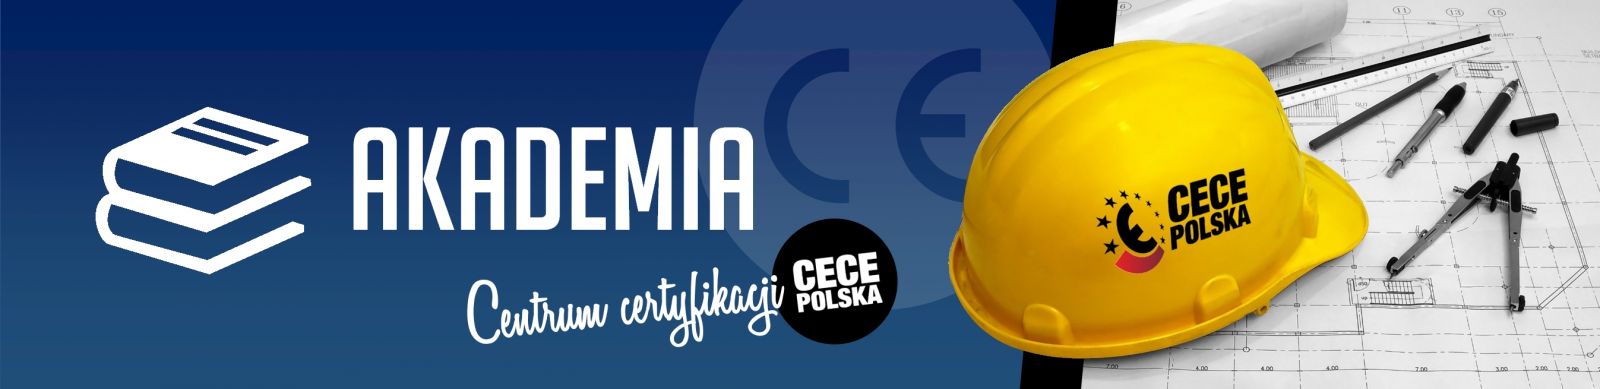 SZKOLENIA ZNAK CE / Szkolenia znak CE online